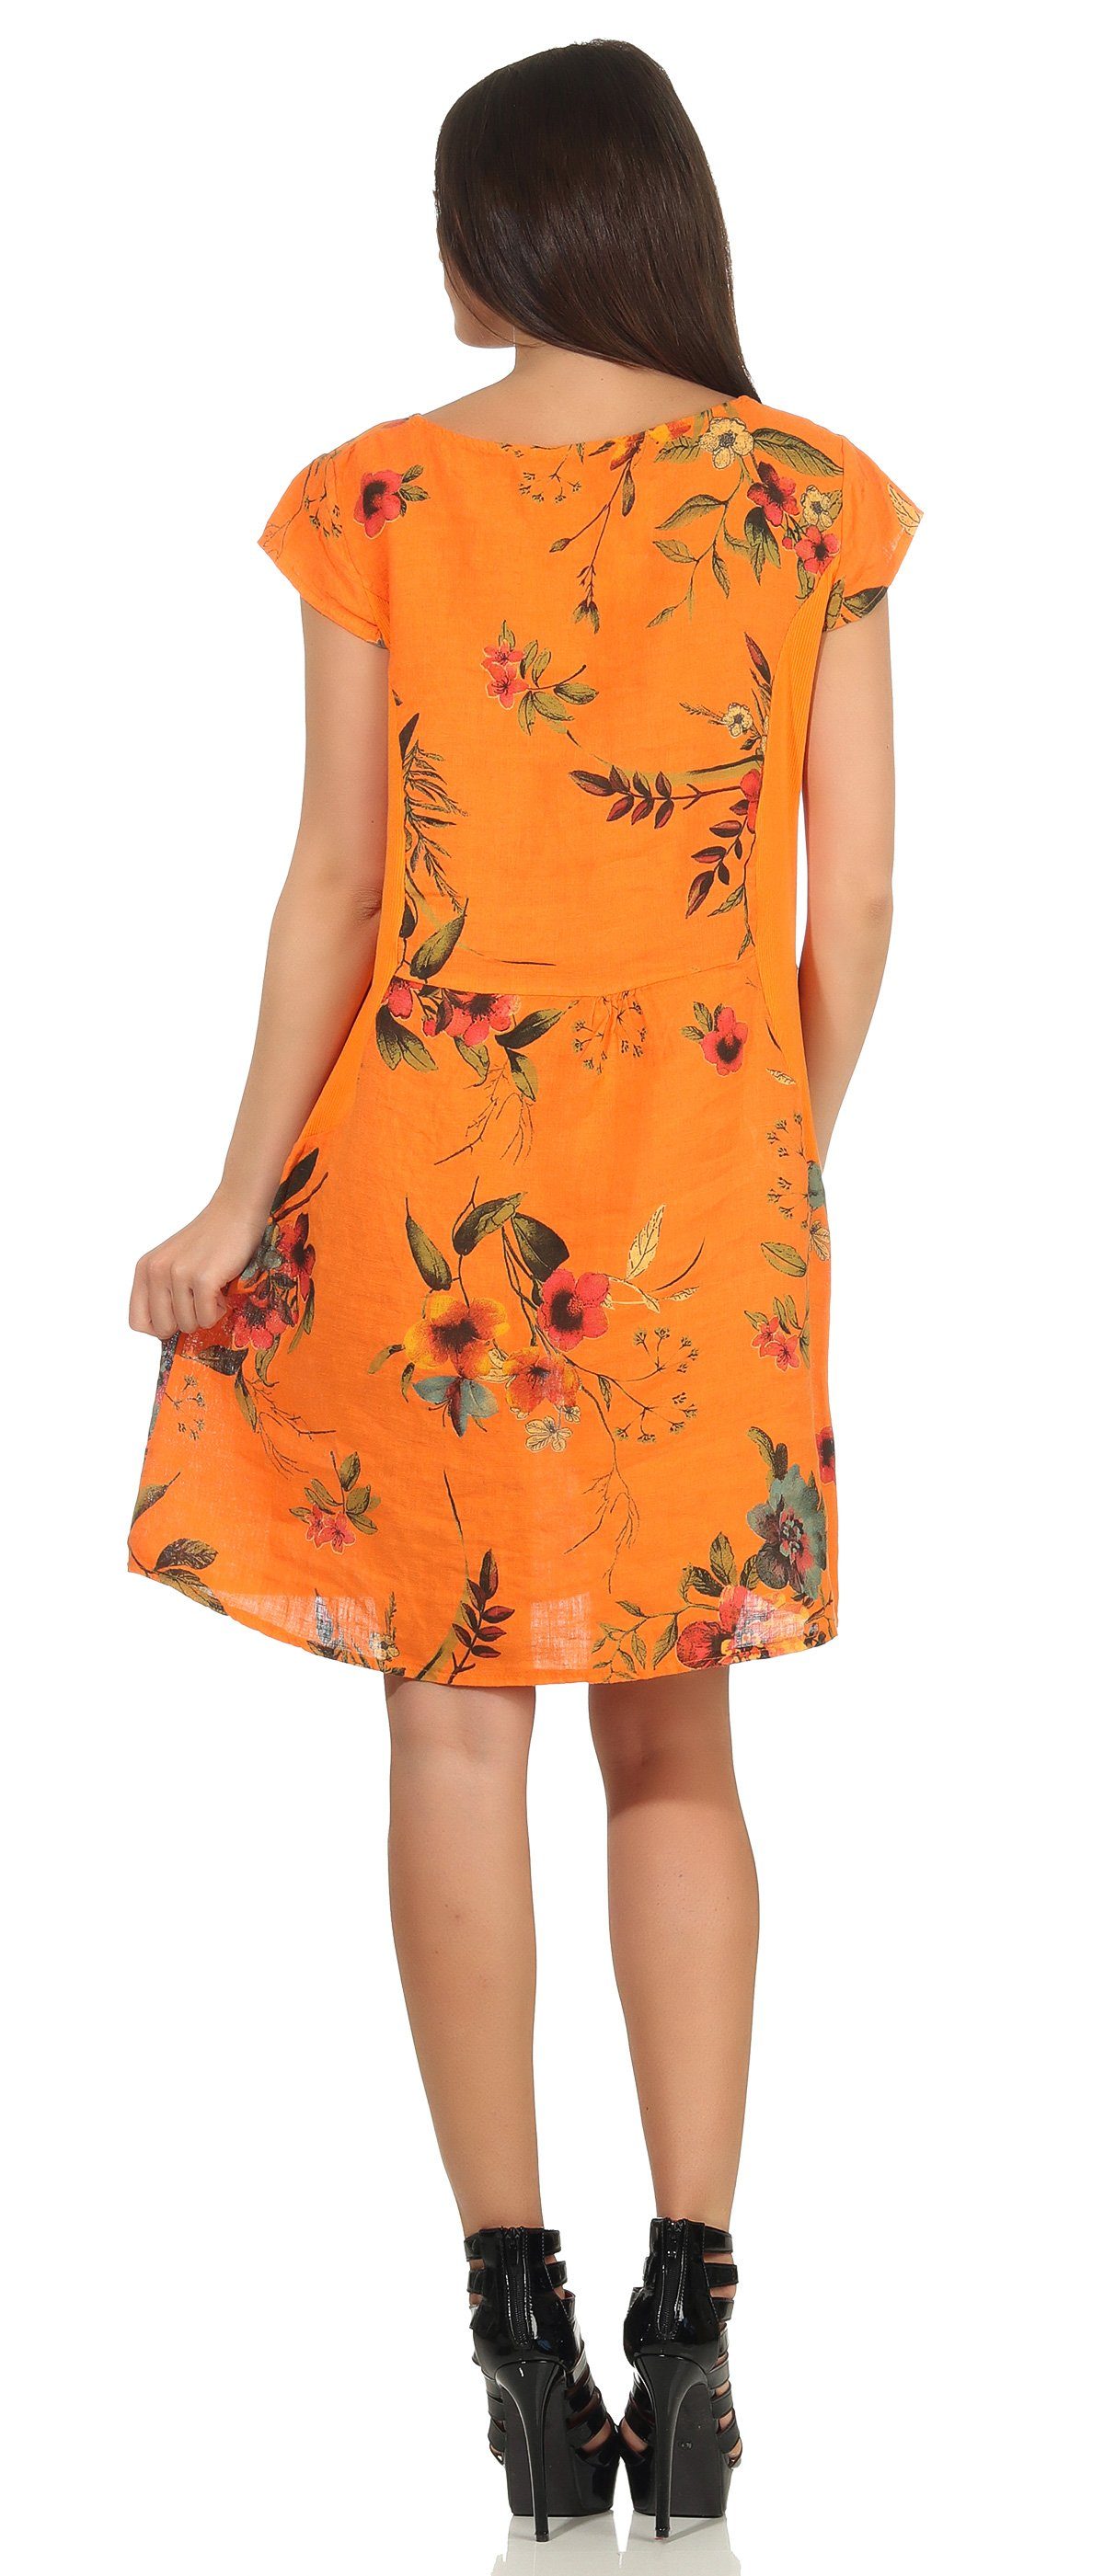 M.330 Dame Blumenprint Leinenkleid Leinen Kleid Mississhop Orange Sommerkleid 100%